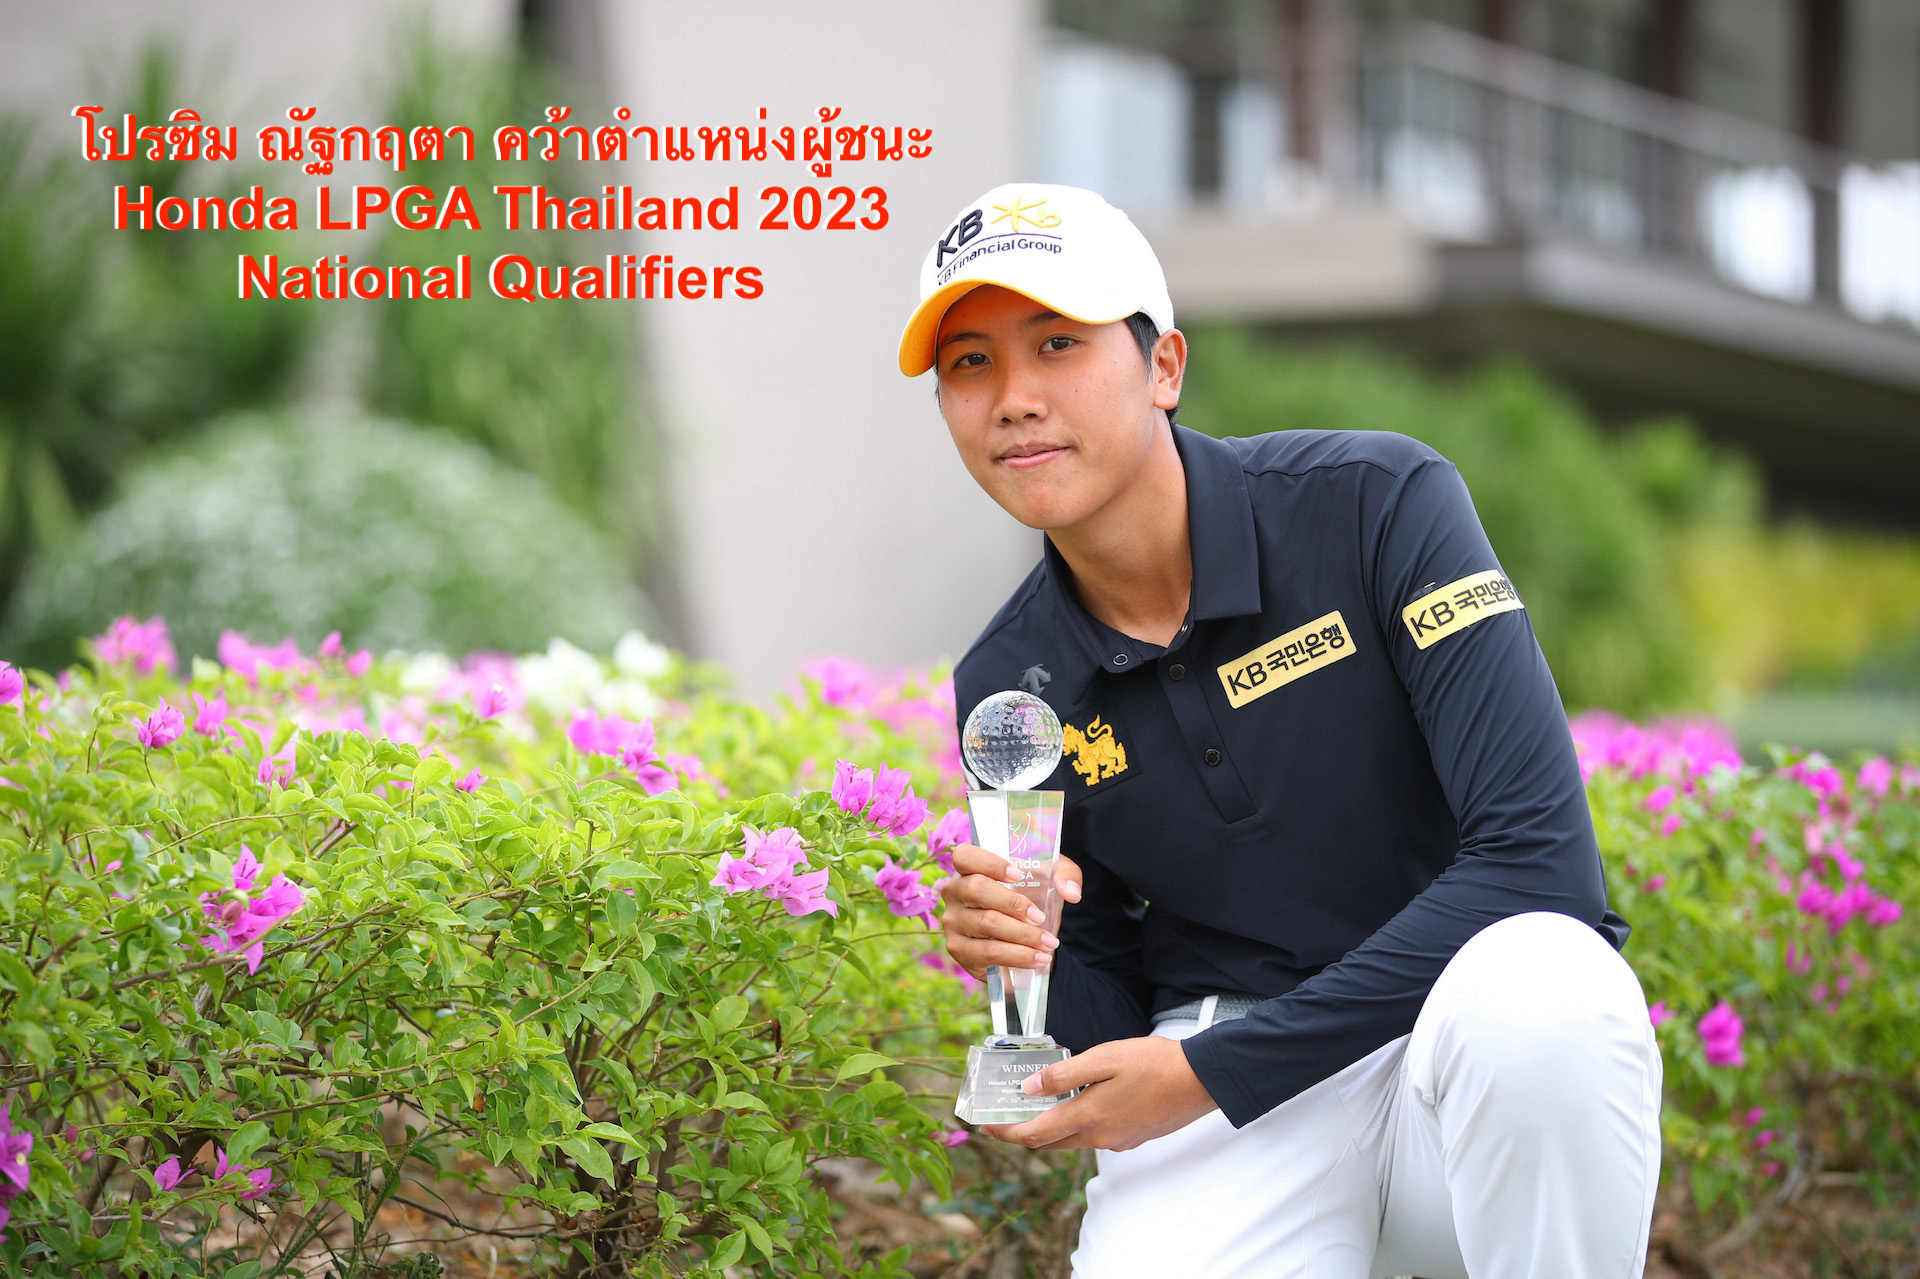 โปรซิม ณัฐกฤตา คว้าตำแหน่งผู้ชนะ Honda LPGA Thailand 2023 National Qualifiers 
รับสิทธิ์เข้าดวลวงสวิงกับนักกอล์ฟหญิงระดับโลก ในการแข่งขัน Honda LPGA Thailand 2023 